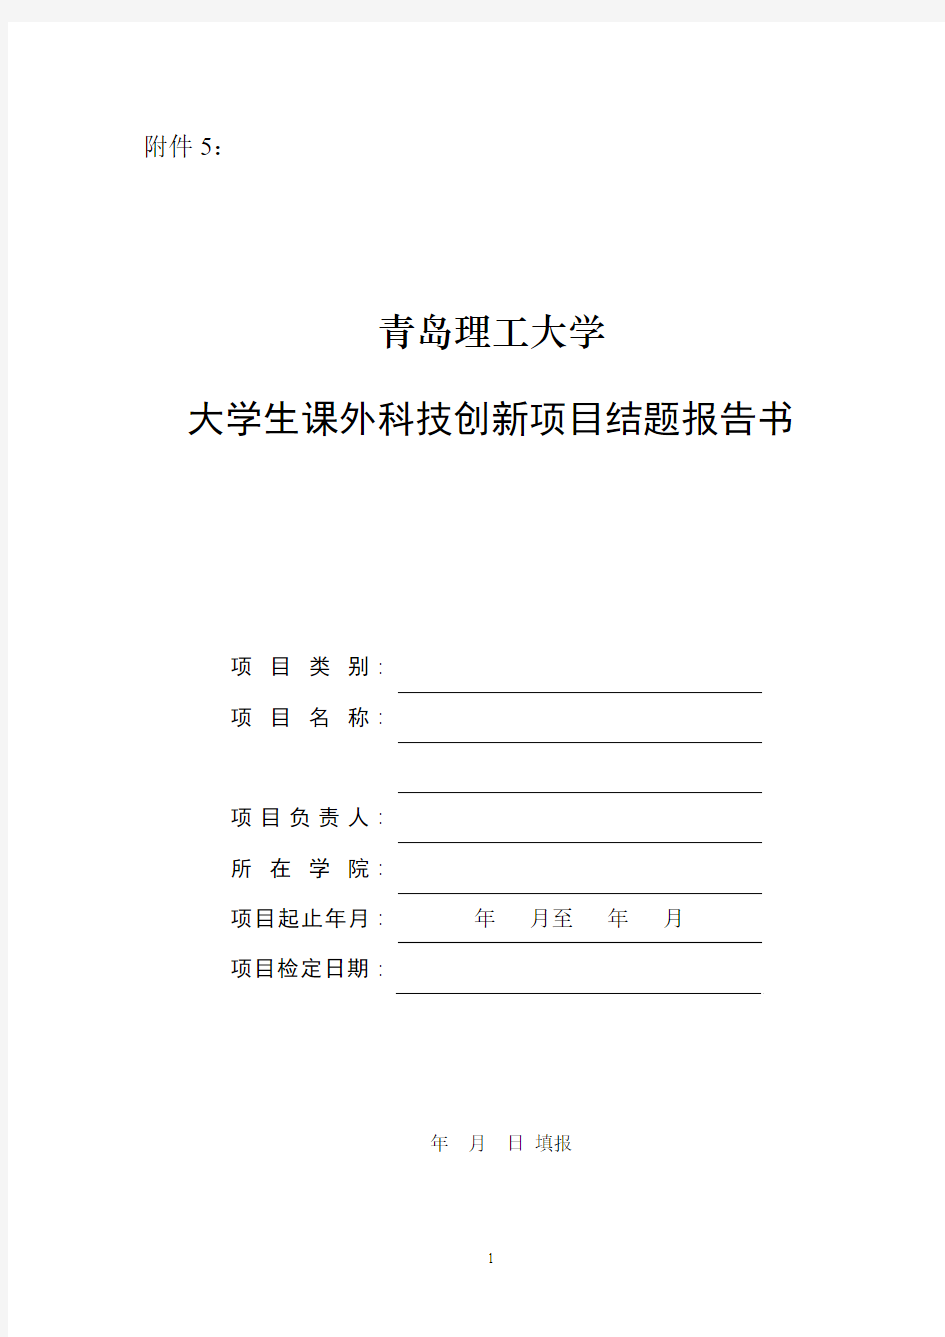 青岛理工大学大学生科技创新项目结题报告书